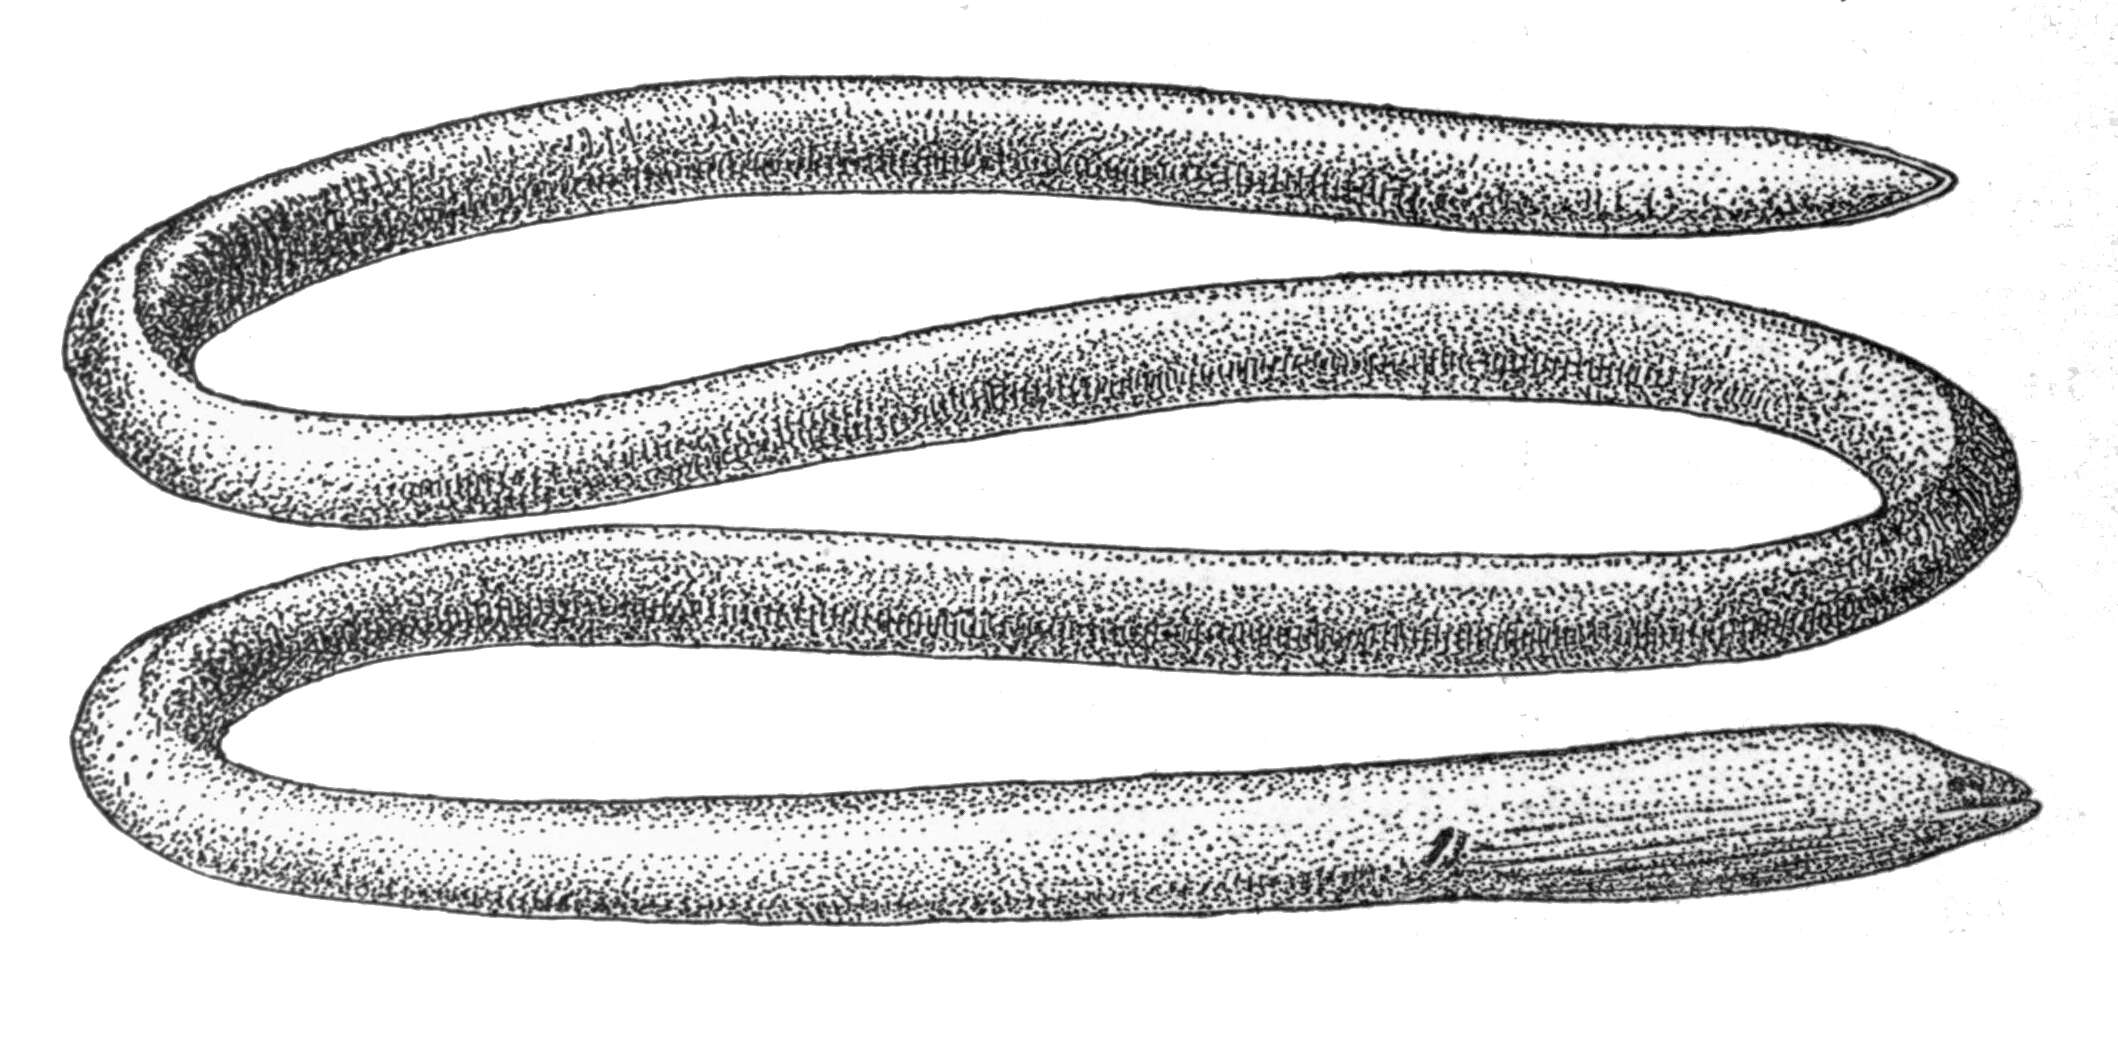 Image of Java spaghetti eel